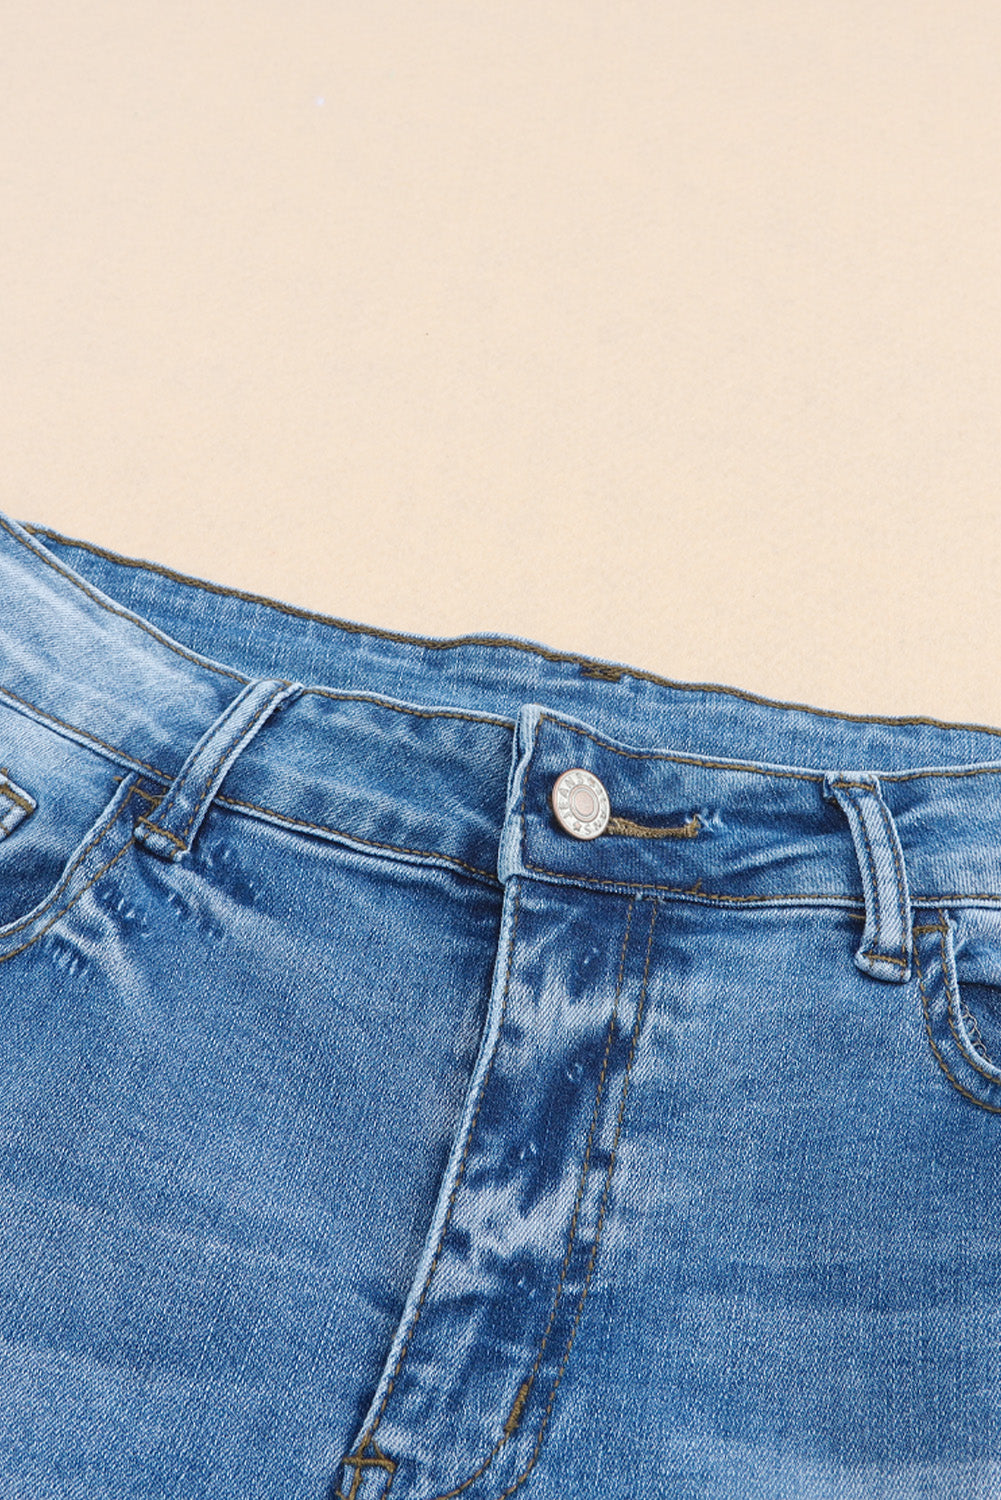 Pantaloncini di jeans con tasca a vita alta invecchiati vintage azzurro cielo